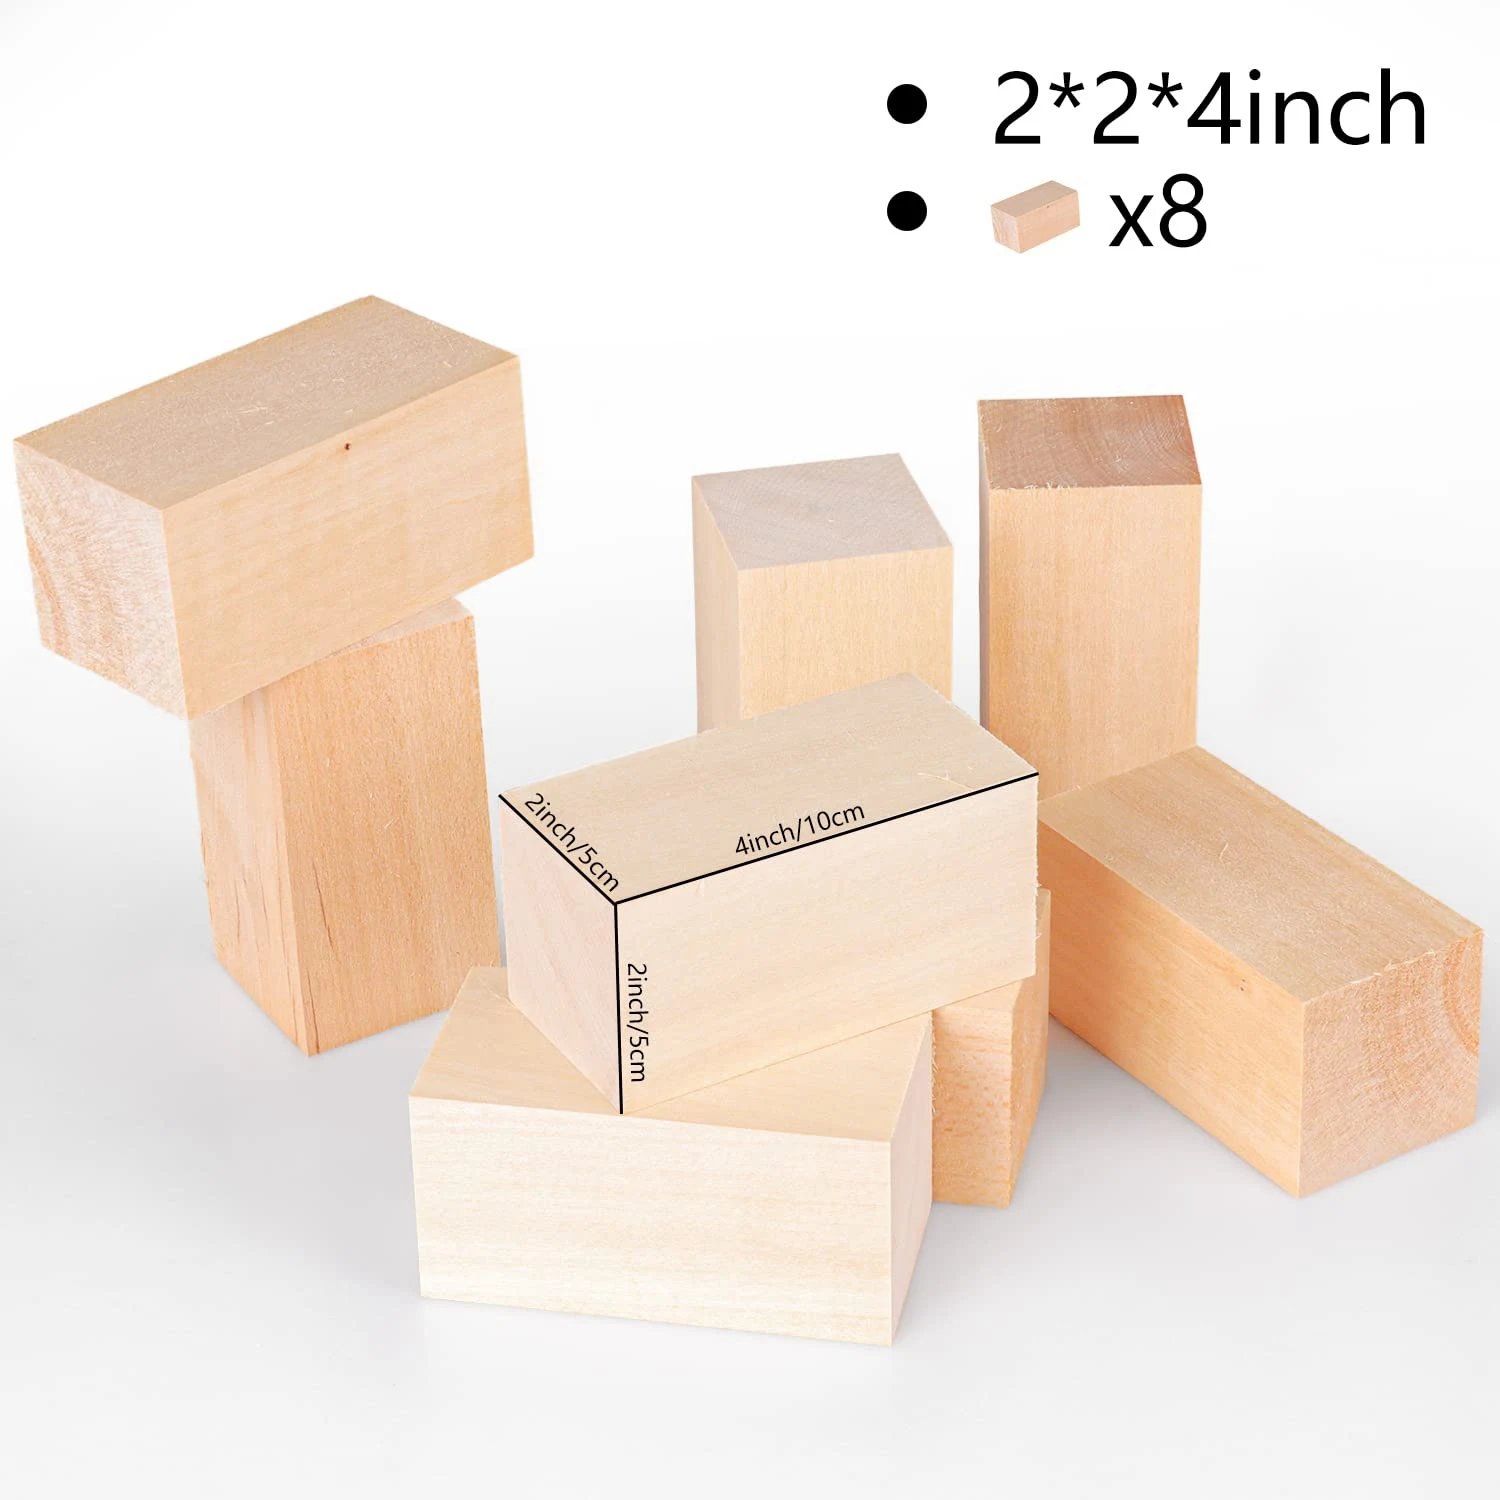 Блоки для резьбы по дереву из липы 4 x 2 x 2 Дюйма, Набор Блоков для Строгания по дереву для Детей, Взрослых, Начинающих или экспертов 2